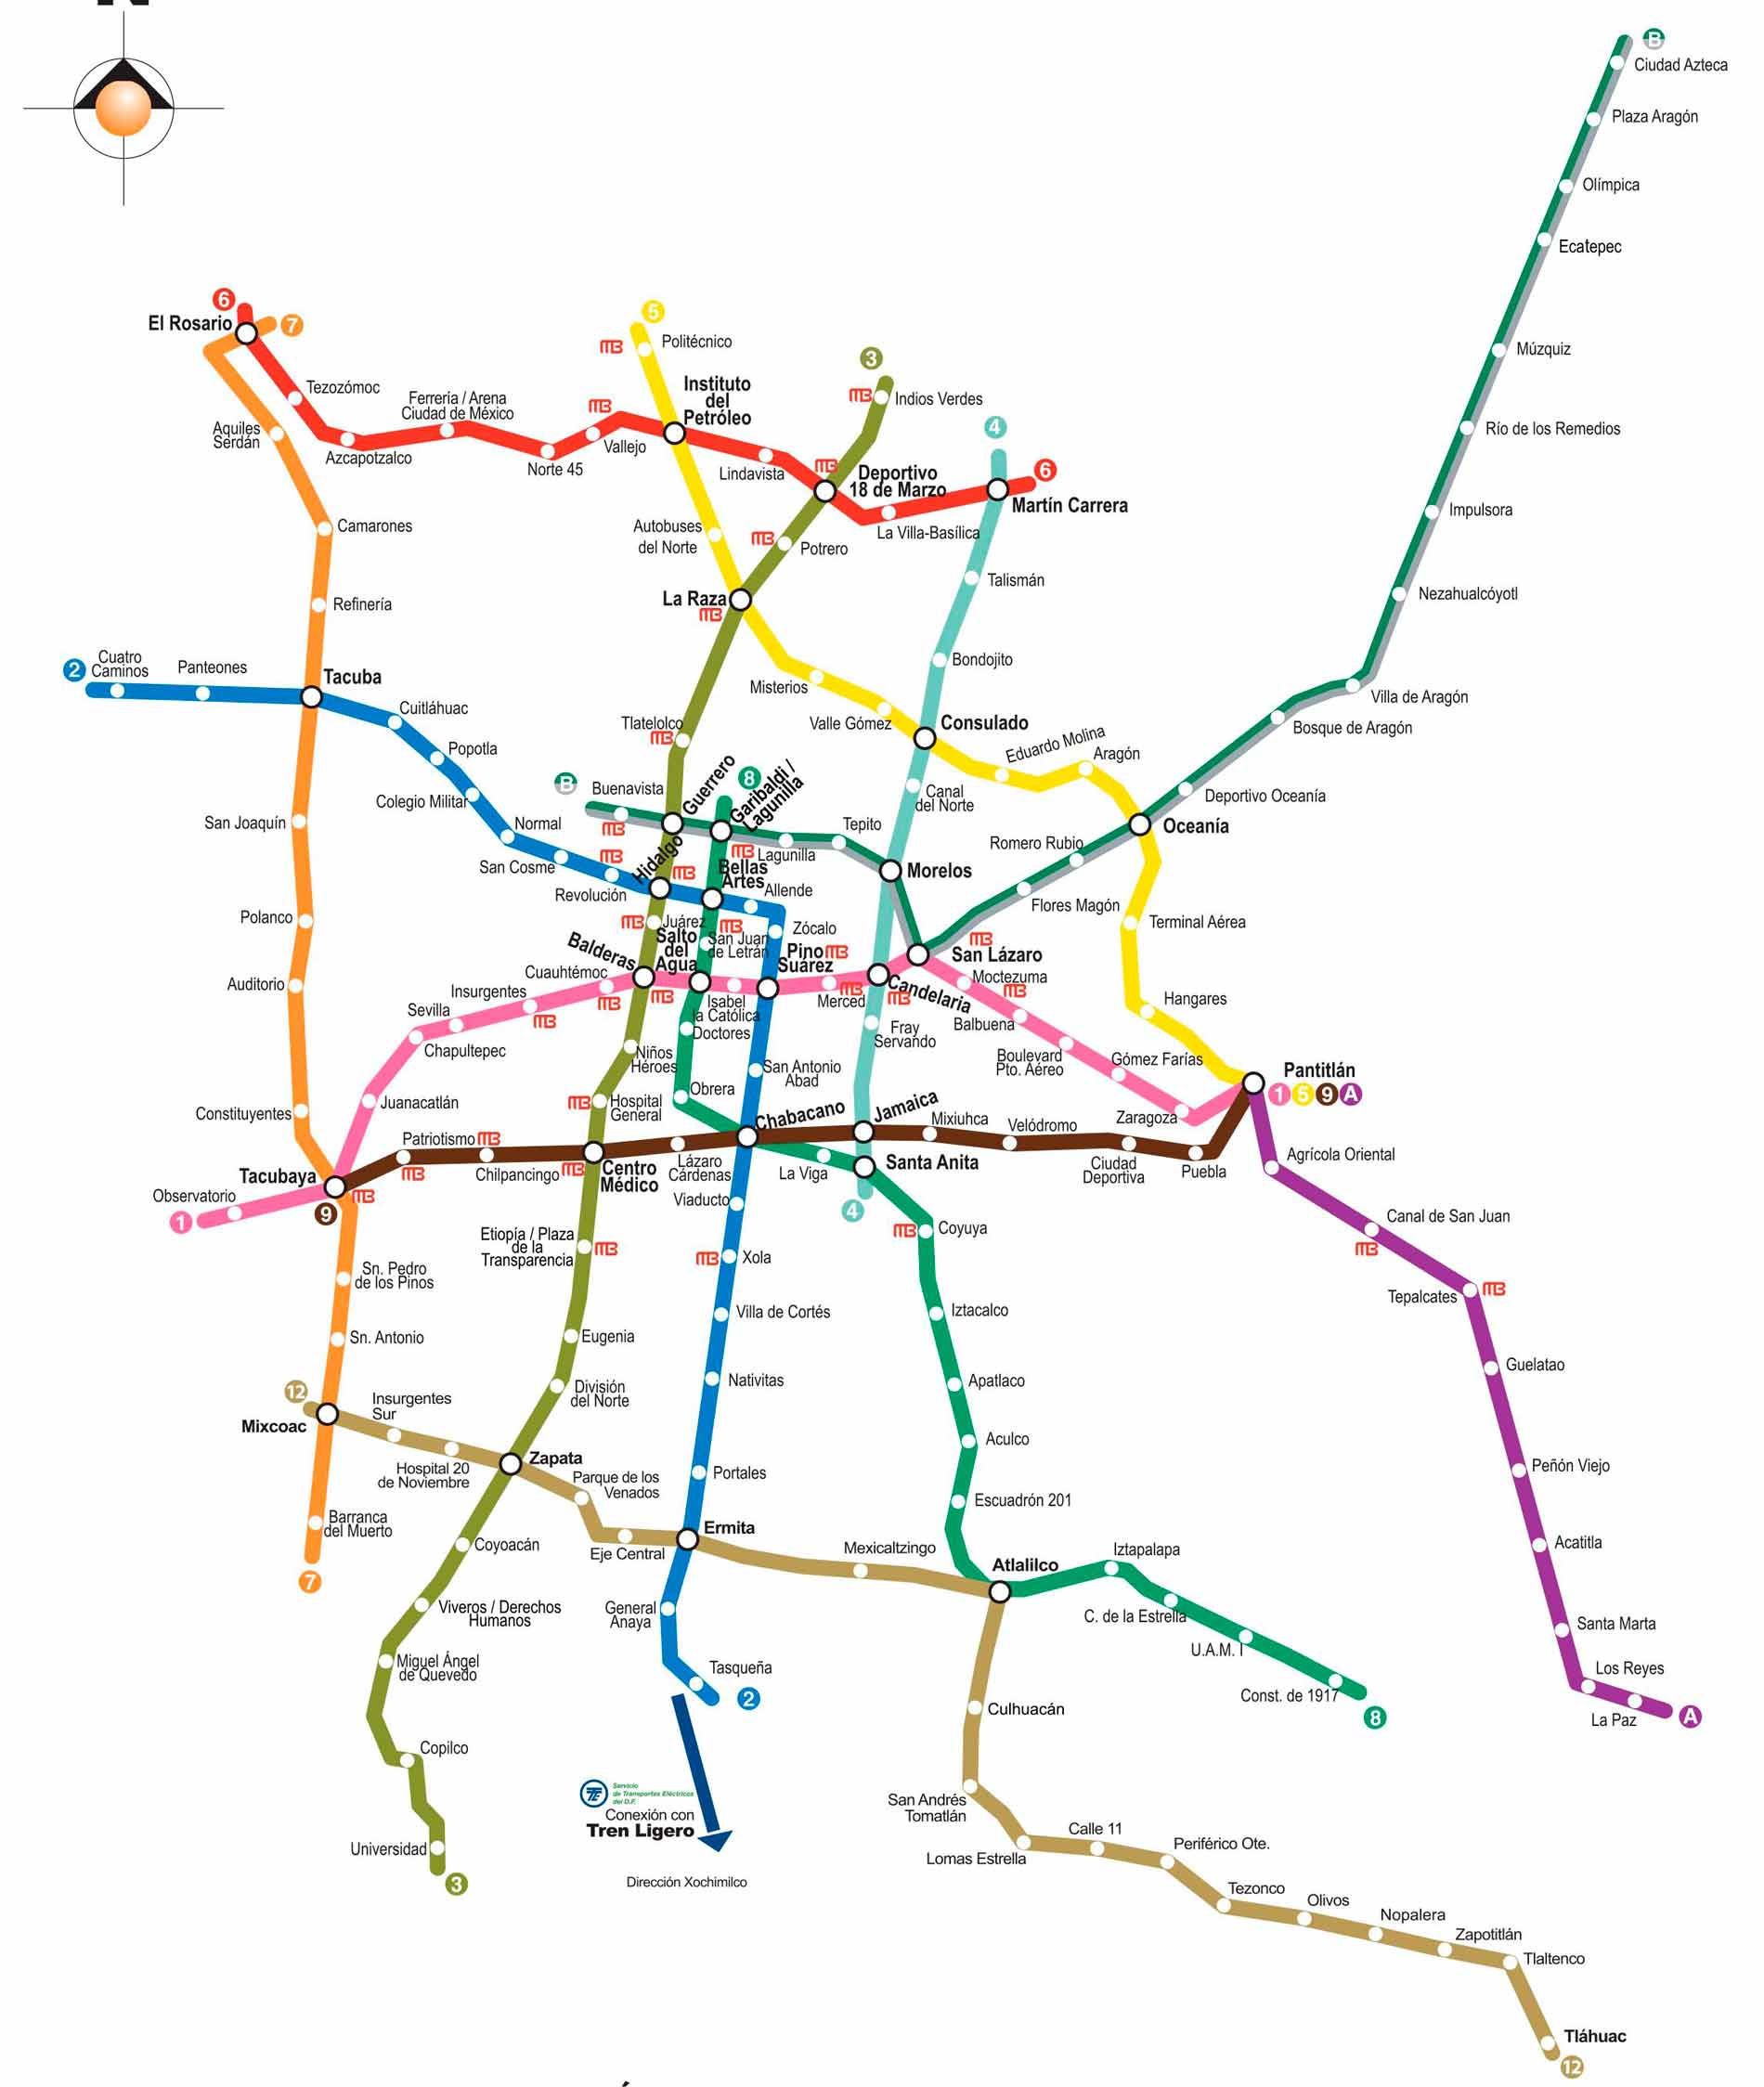 Mapa del Metro CDMX: Todas las estaciones, líneas y horarios